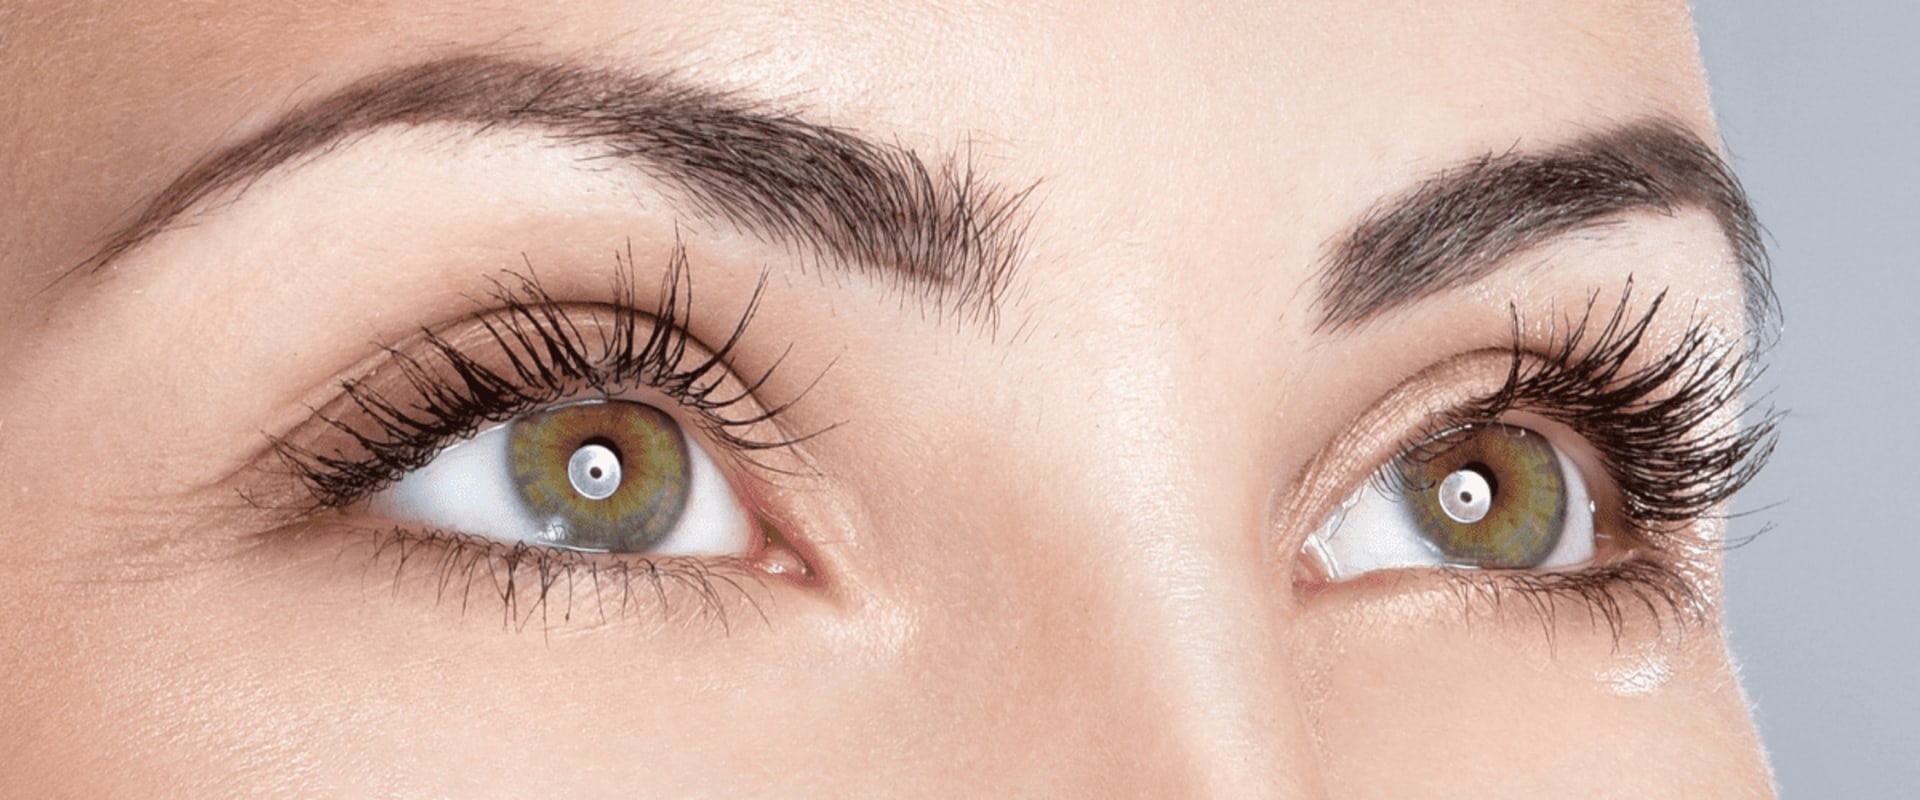 What do long eyelashes indicate?